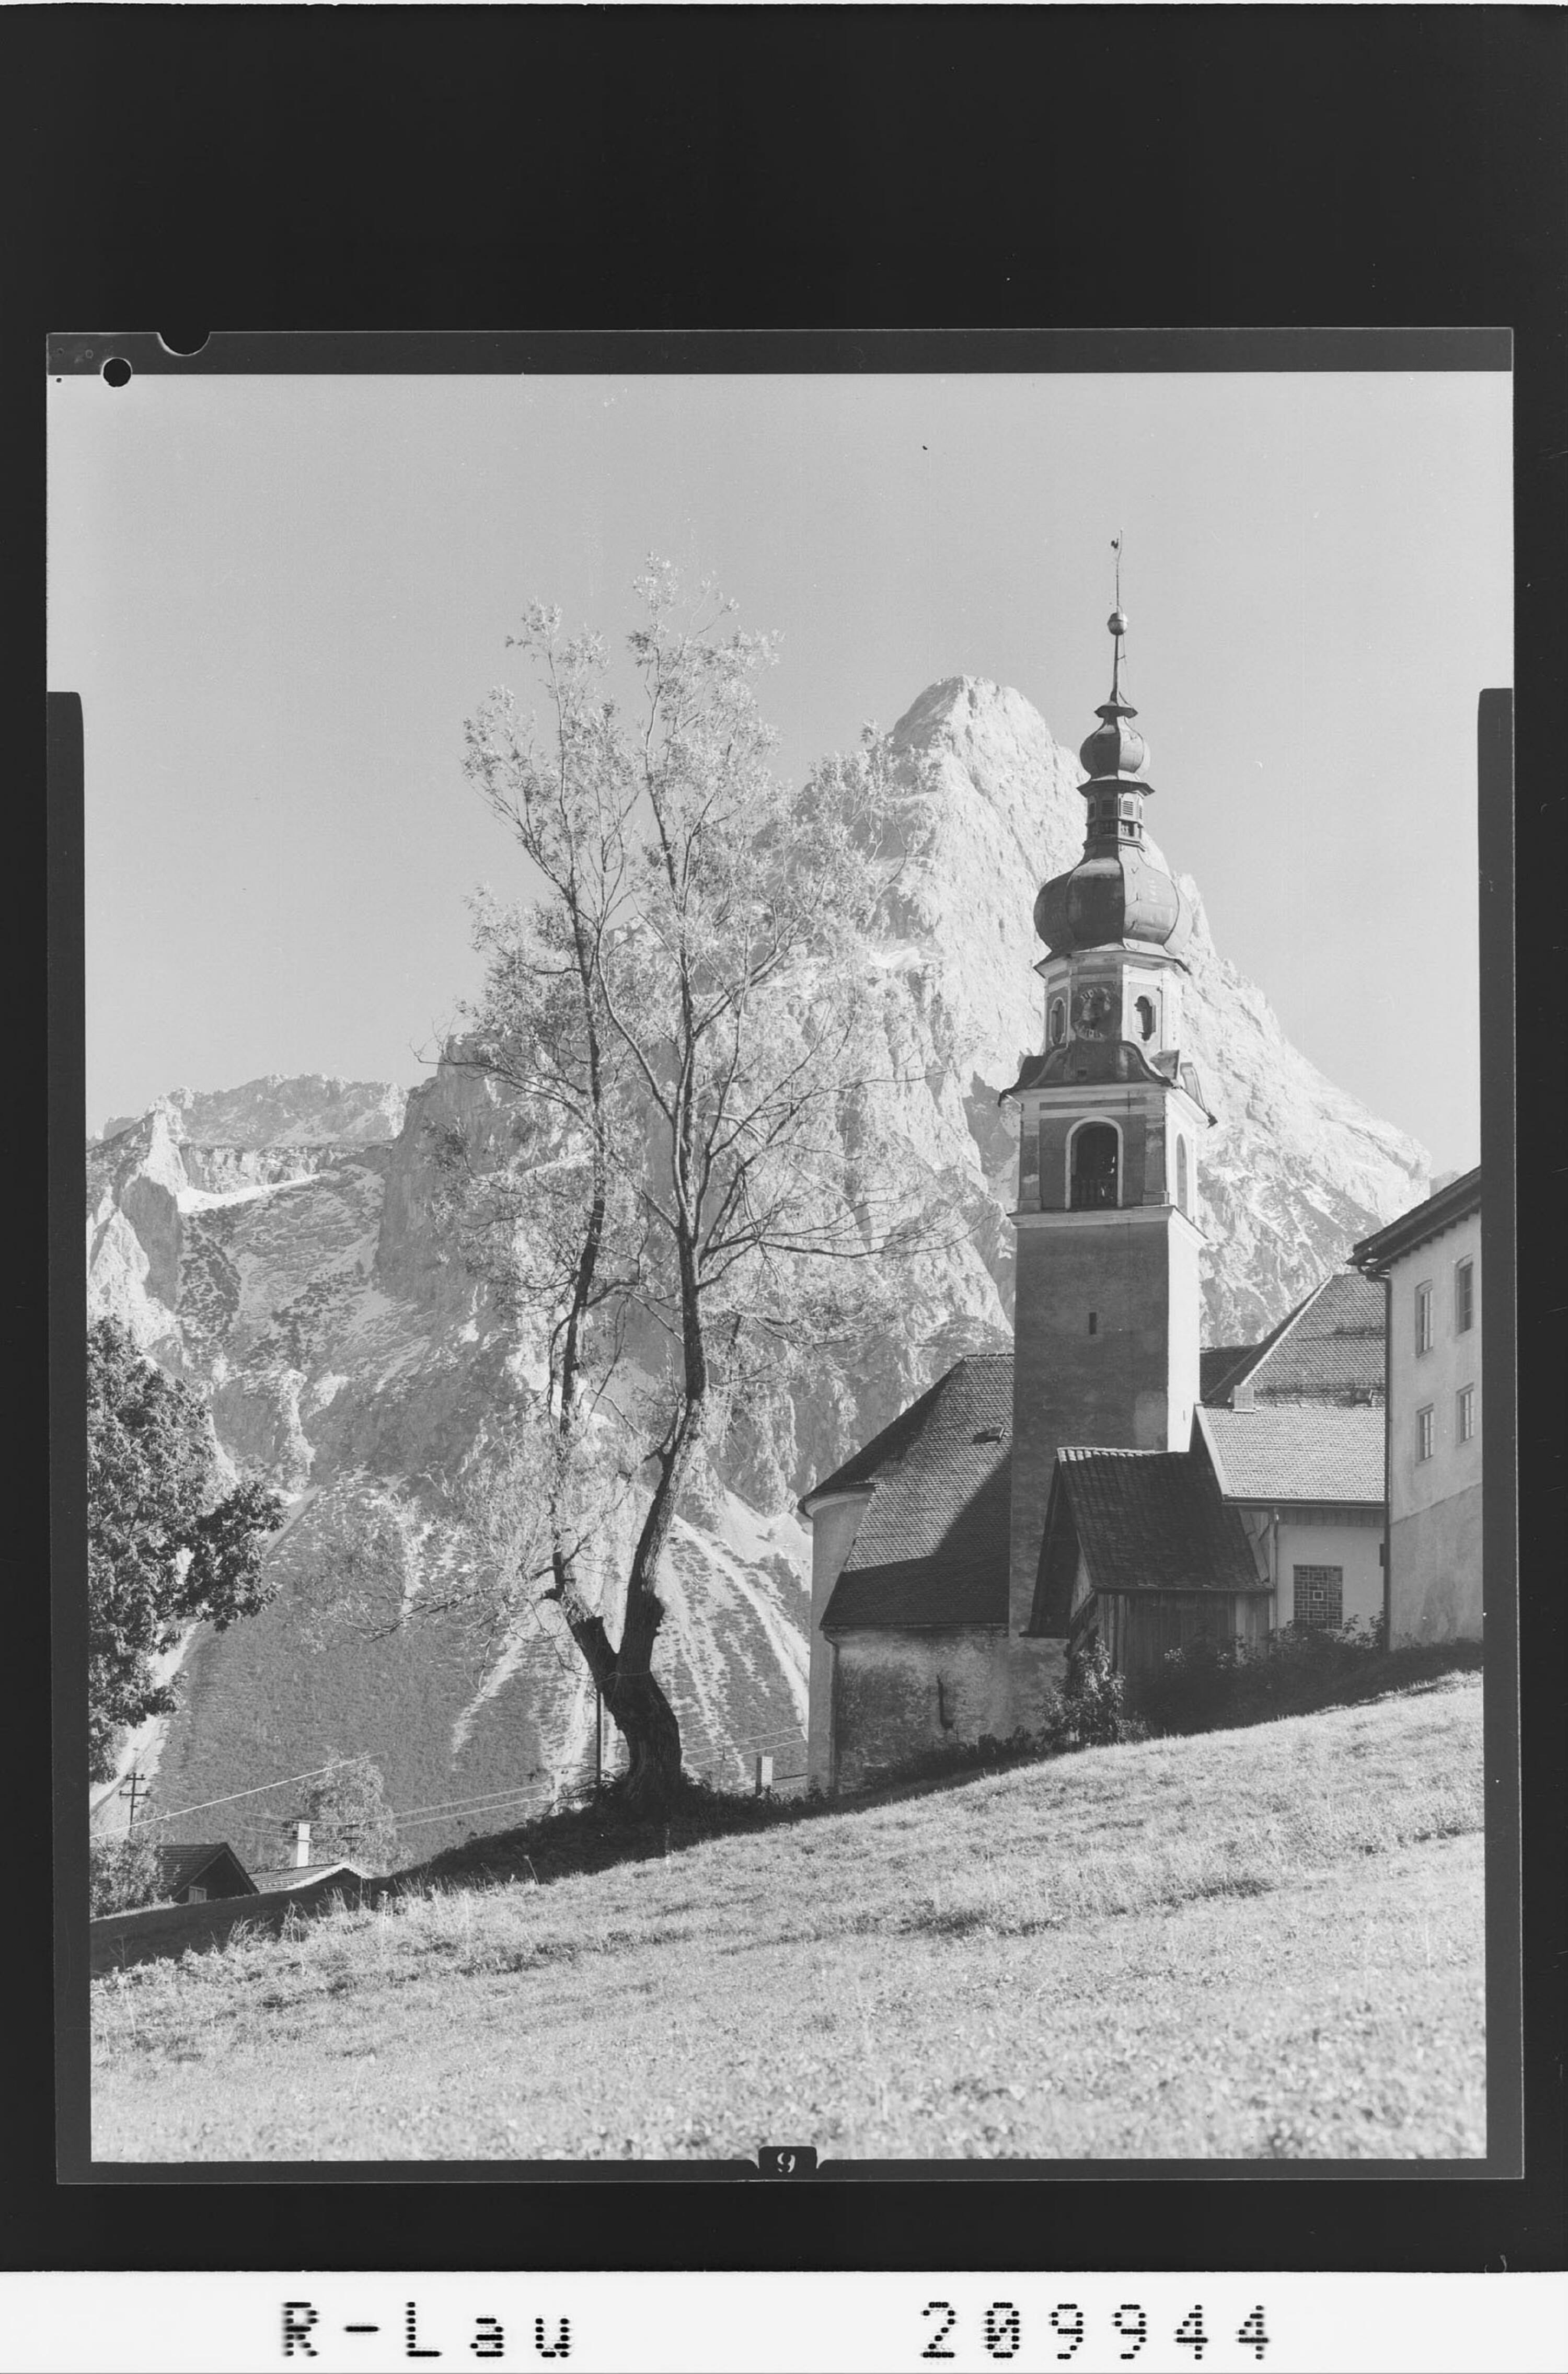 [Pfarrkirche Lermoos mit Sonnenspitze / Tirol]></div>


    <hr>
    <div class=